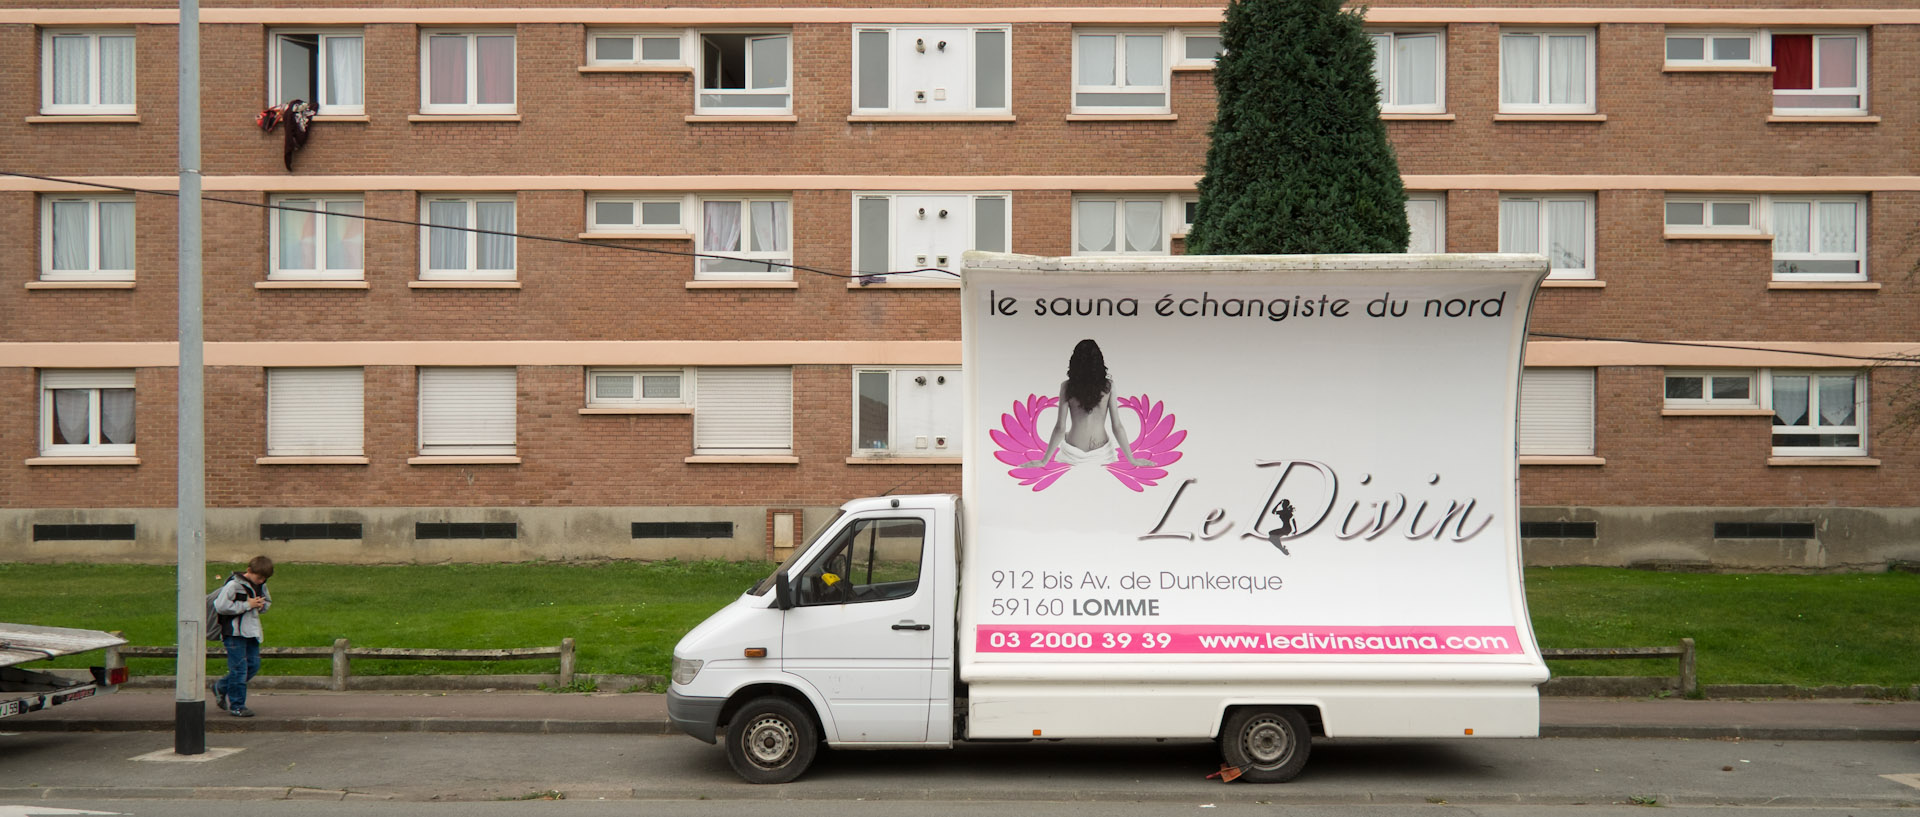 Camion publicitaire pour un sauna échangiste, avenue de Dunkerque, à Lomme Lille.